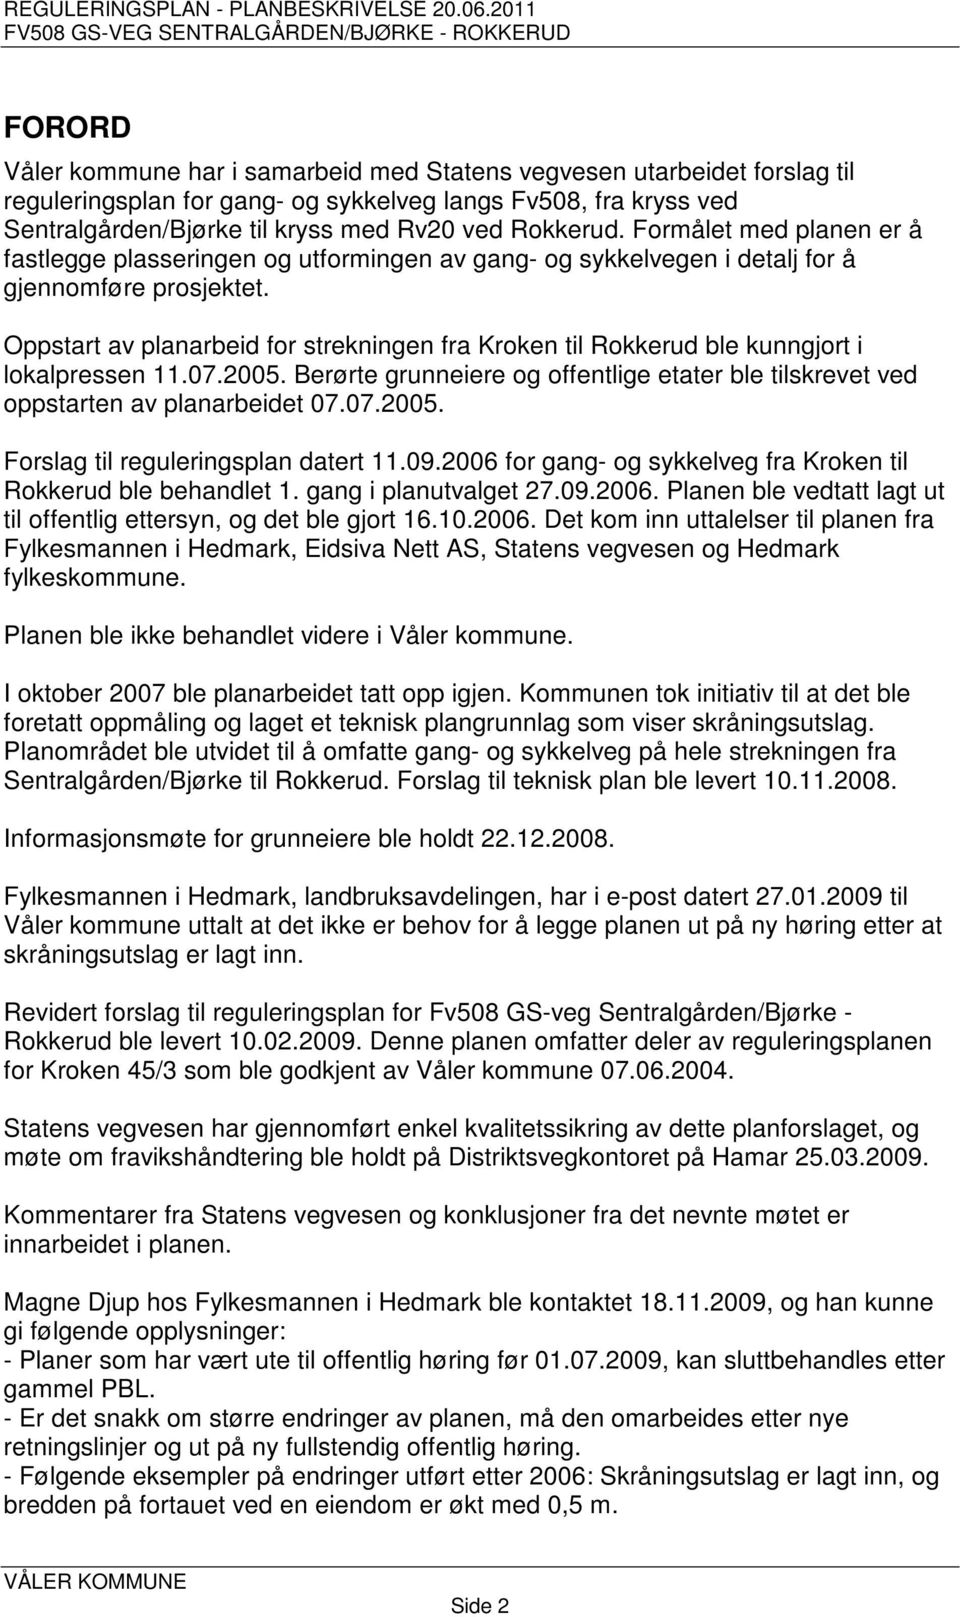 Oppstart av planarbeid for strekningen fra Kroken til Rokkerud ble kunngjort i lokalpressen 11.07.2005. Berørte grunneiere og offentlige etater ble tilskrevet ved oppstarten av planarbeidet 07.07.2005. Forslag til reguleringsplan datert 11.